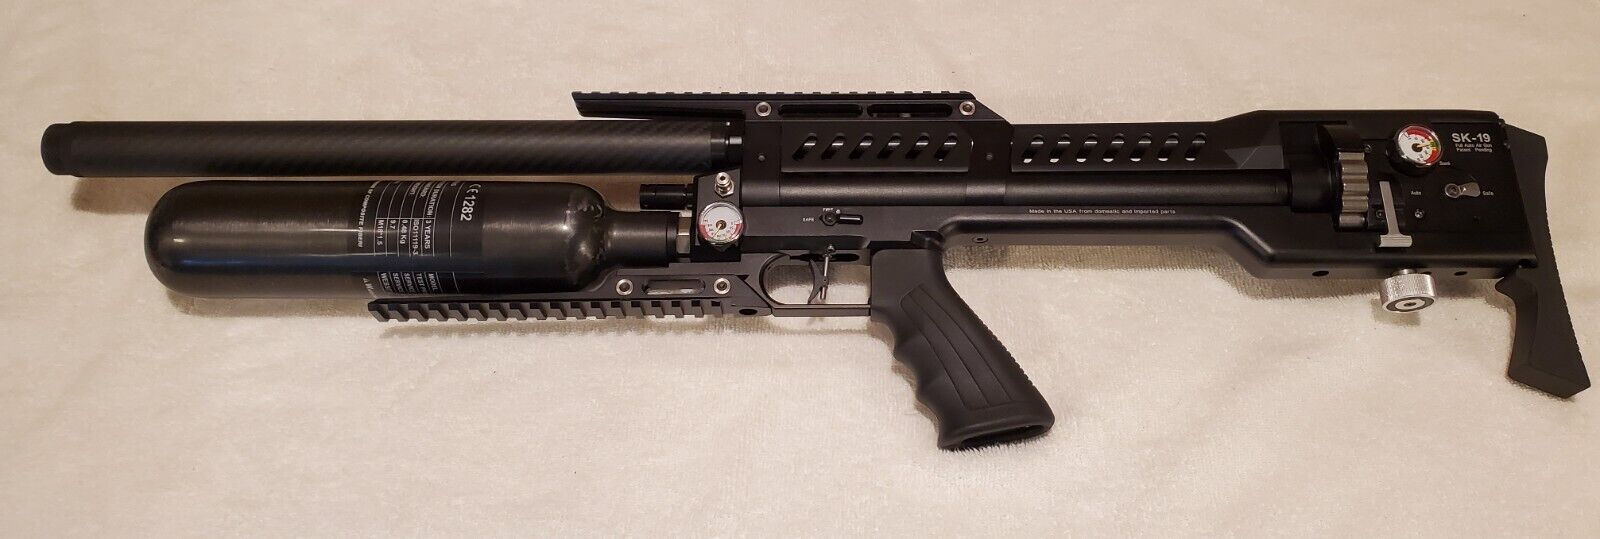 LCS .22 Caliber Starter Pistol